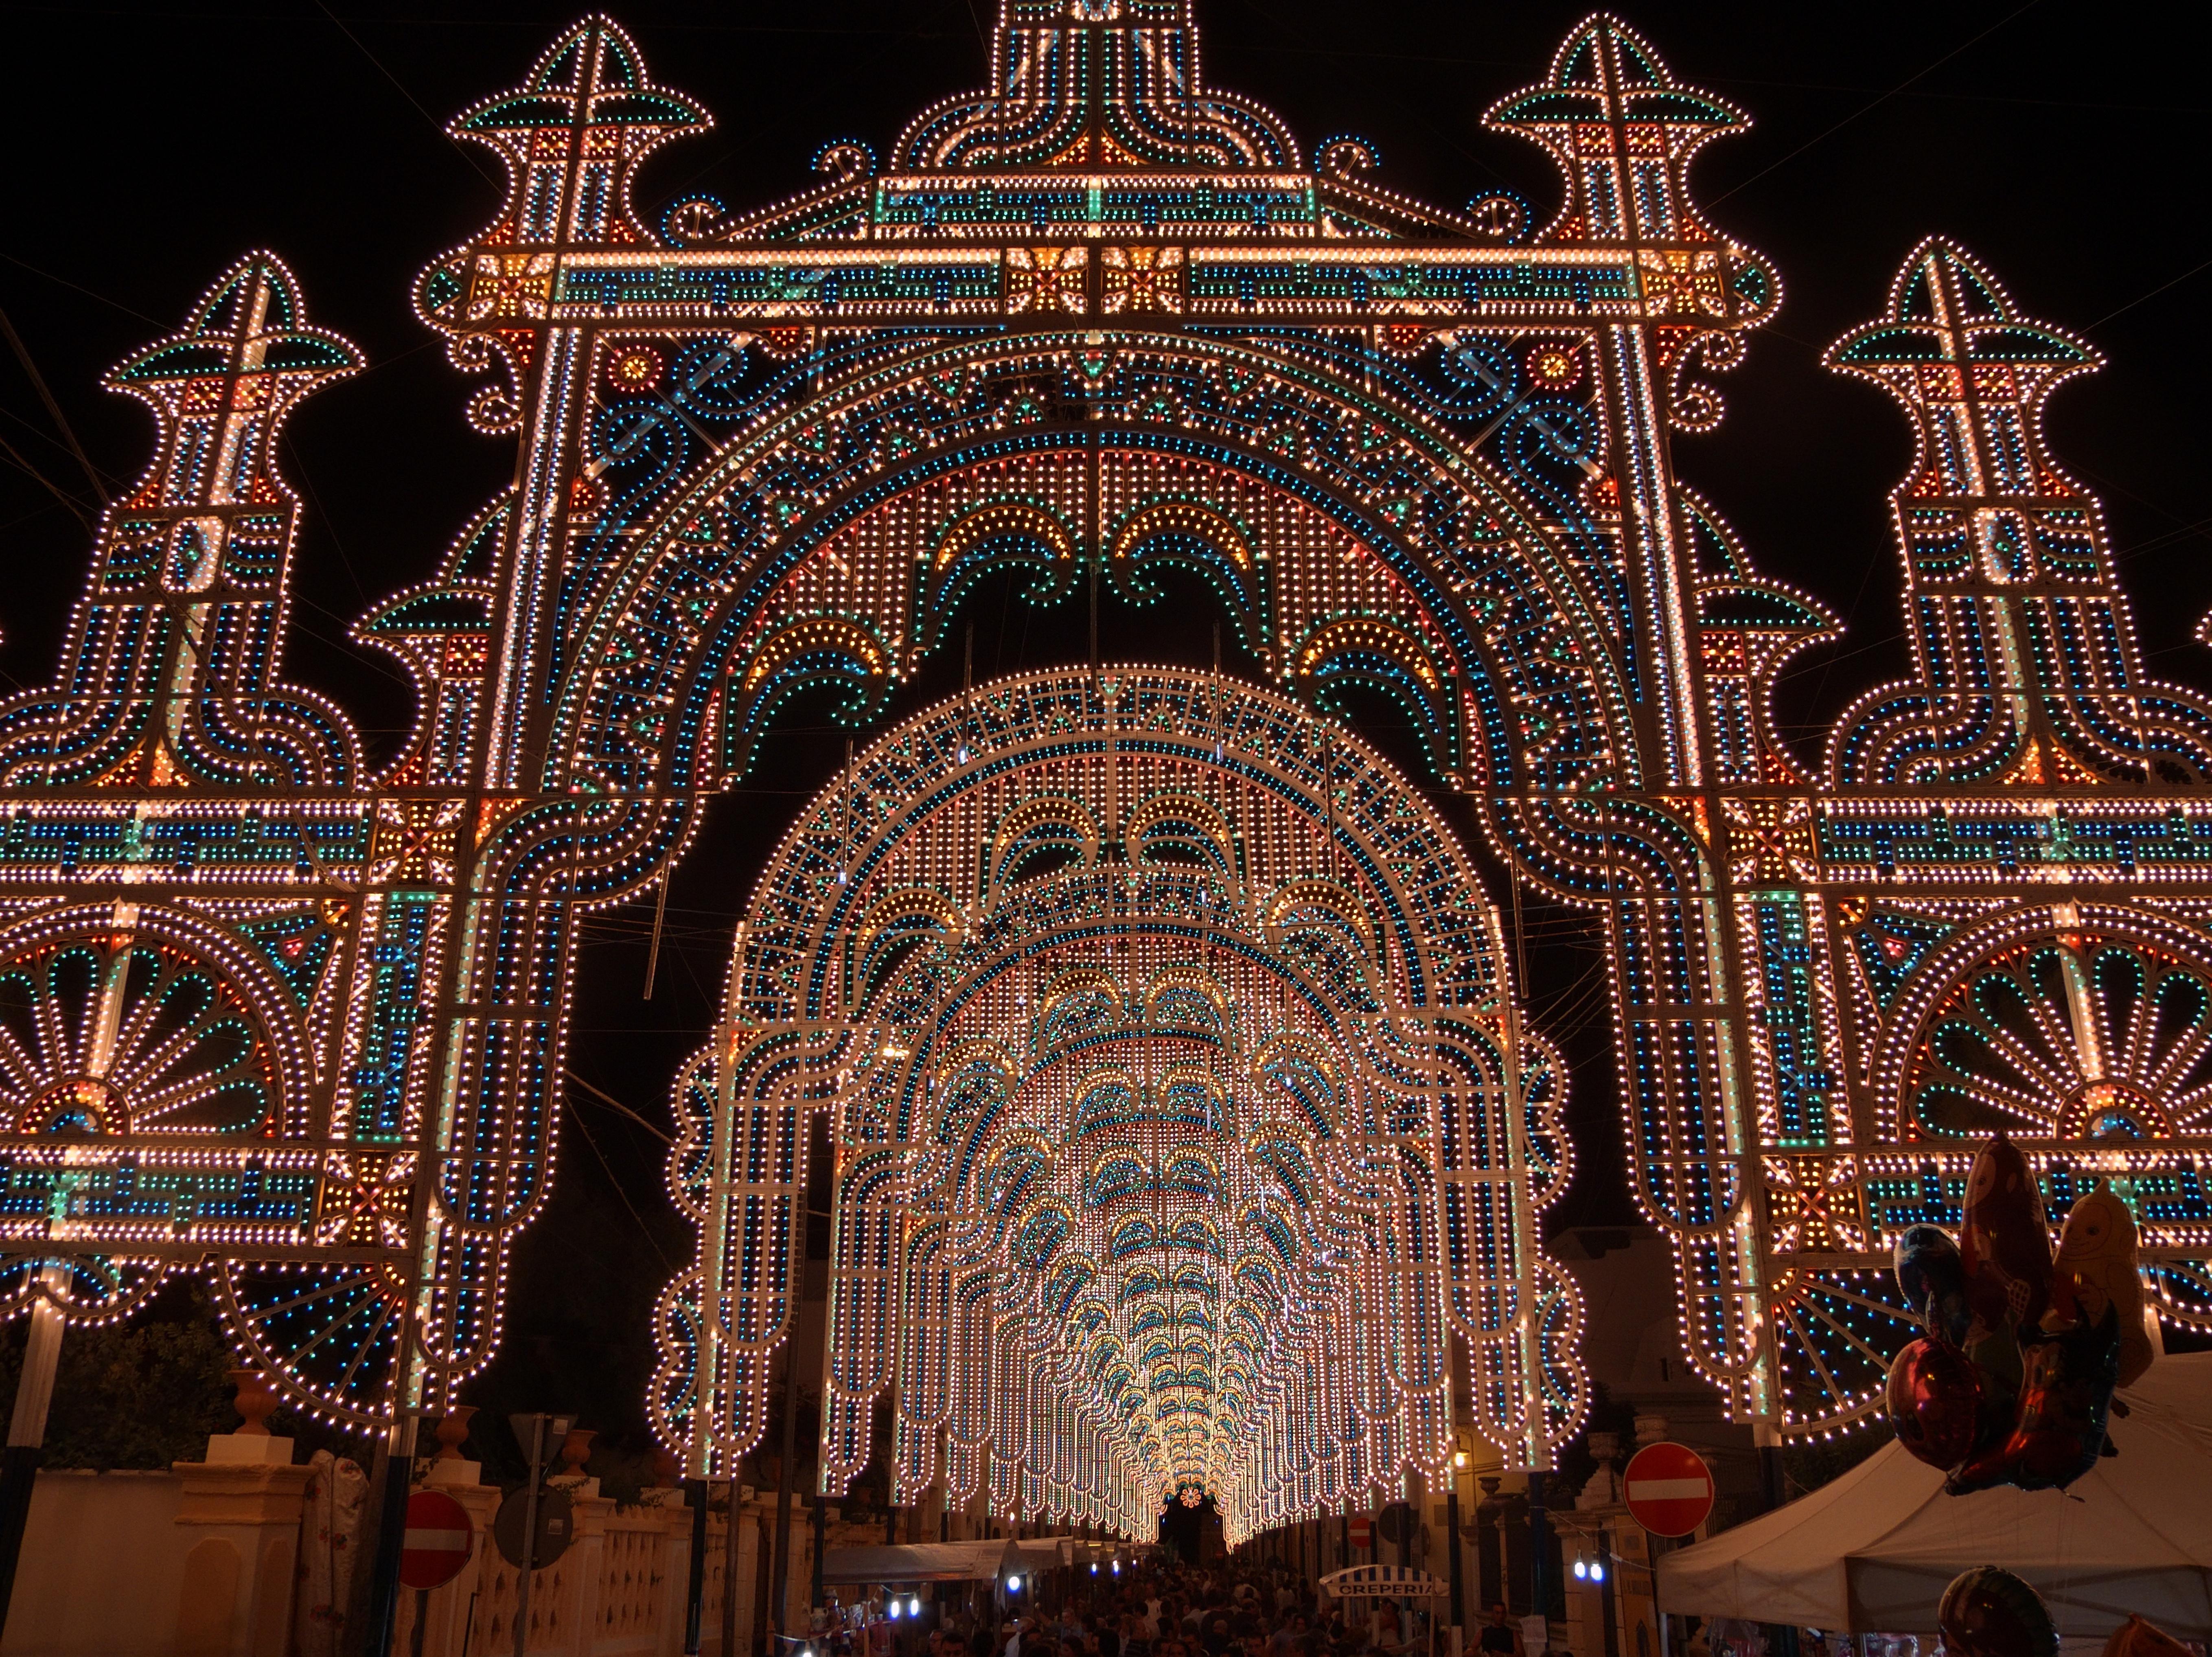 Alezio (Lecce, Italy): Lights for the town festival - Alezio (Lecce, Italy)